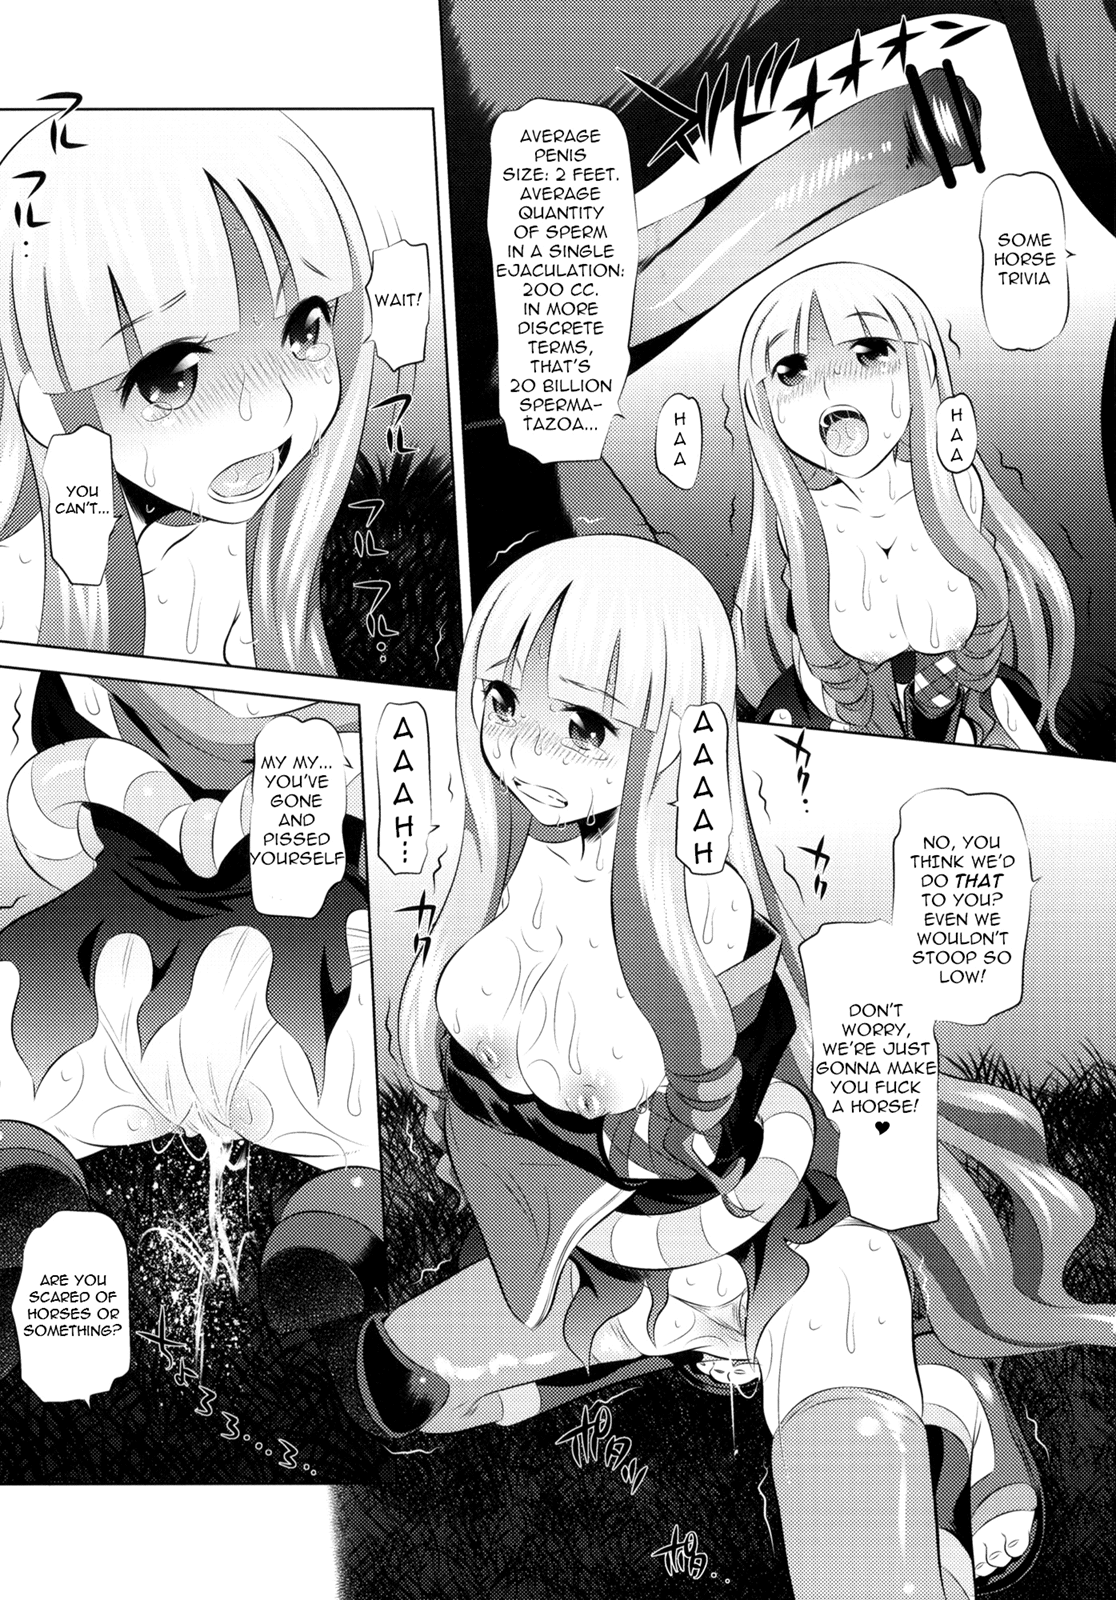 Togame vs Horse hentai manga picture 16